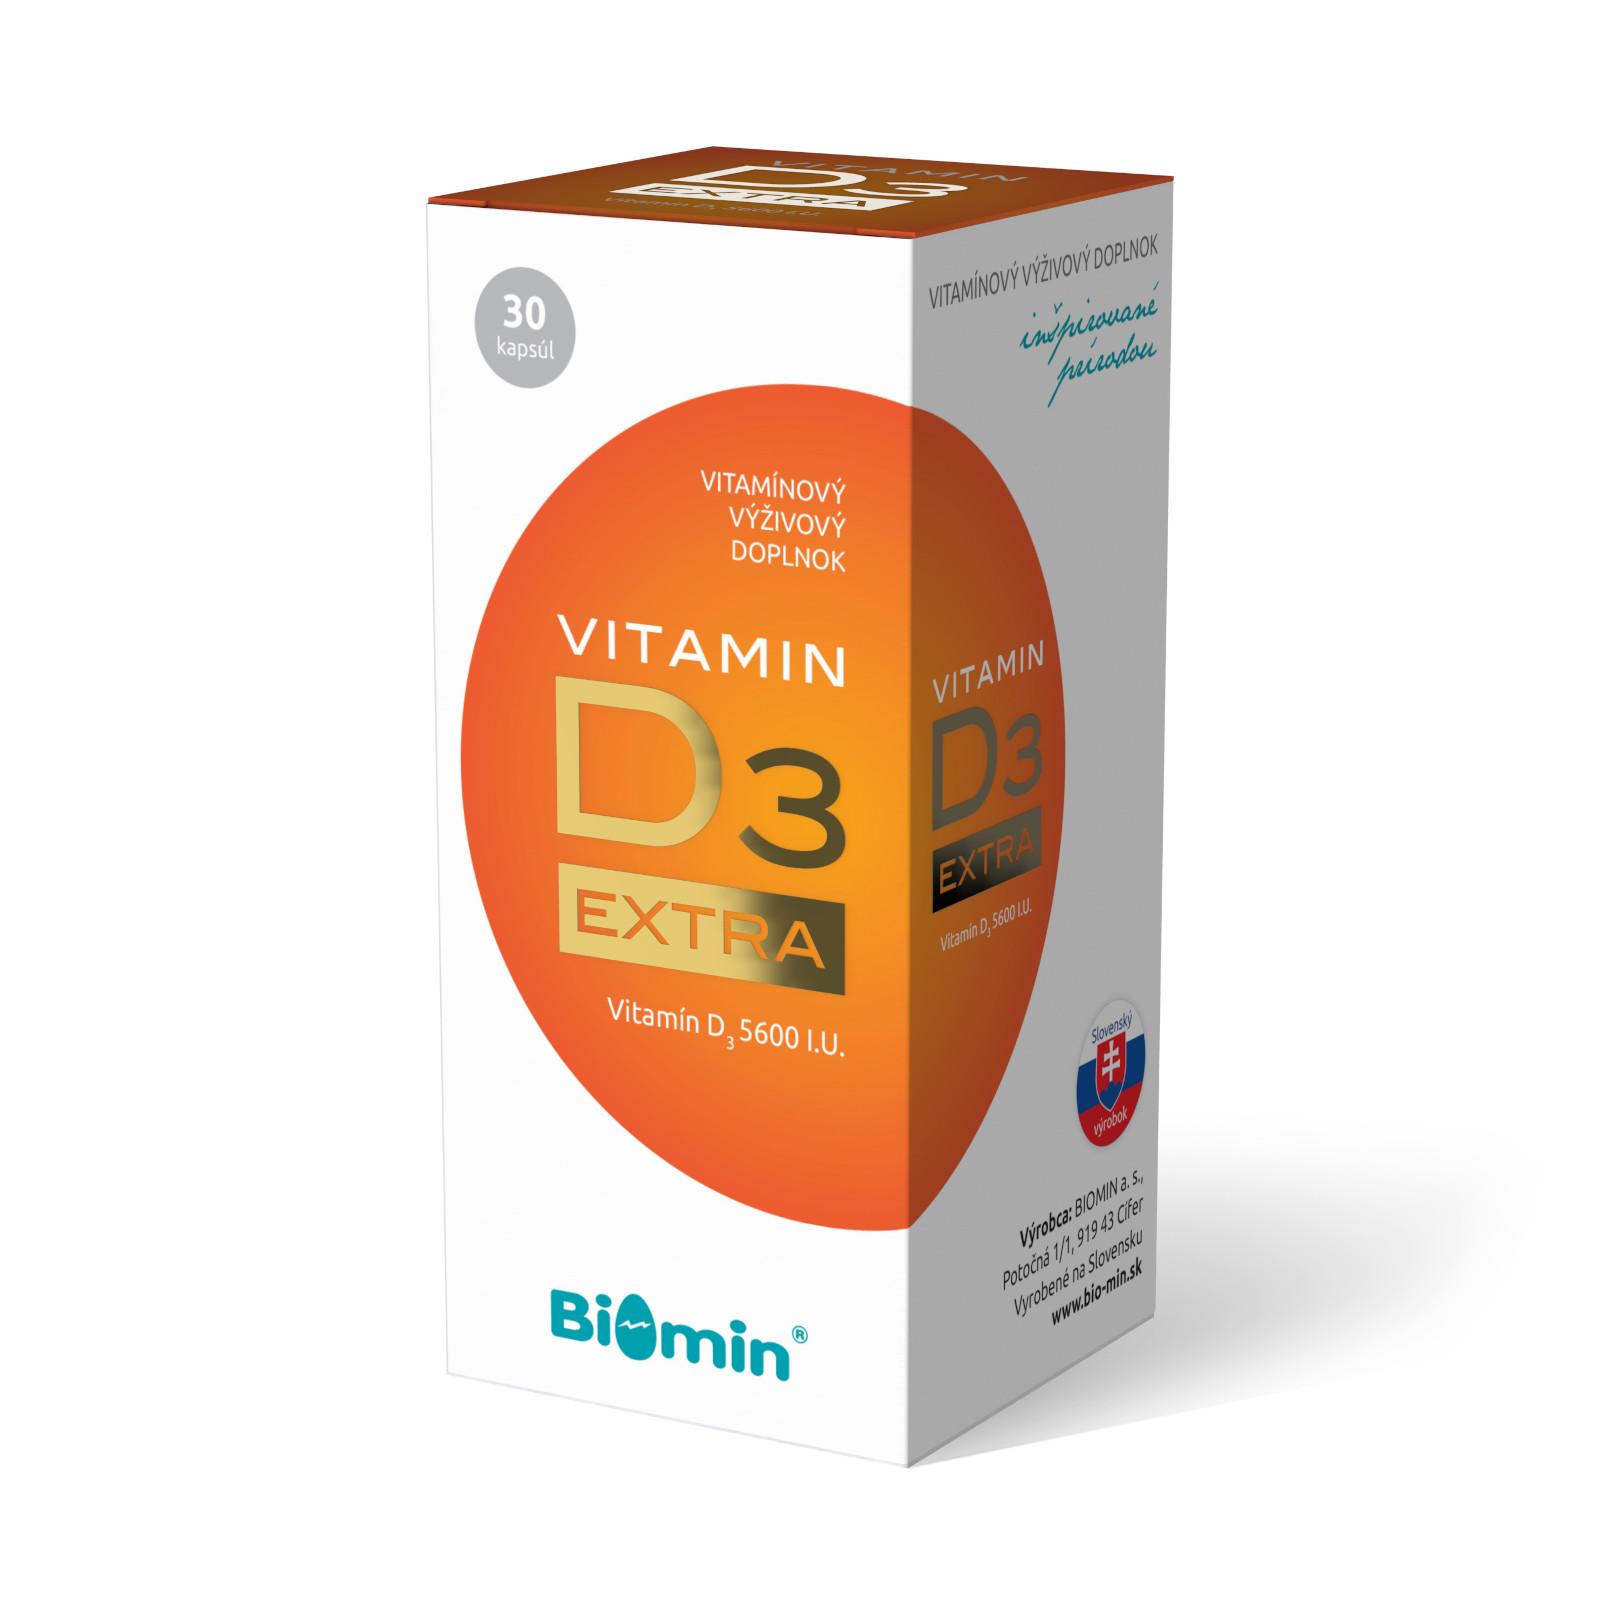 BIOMIN Vitamín D3 EXTRA 30 ks